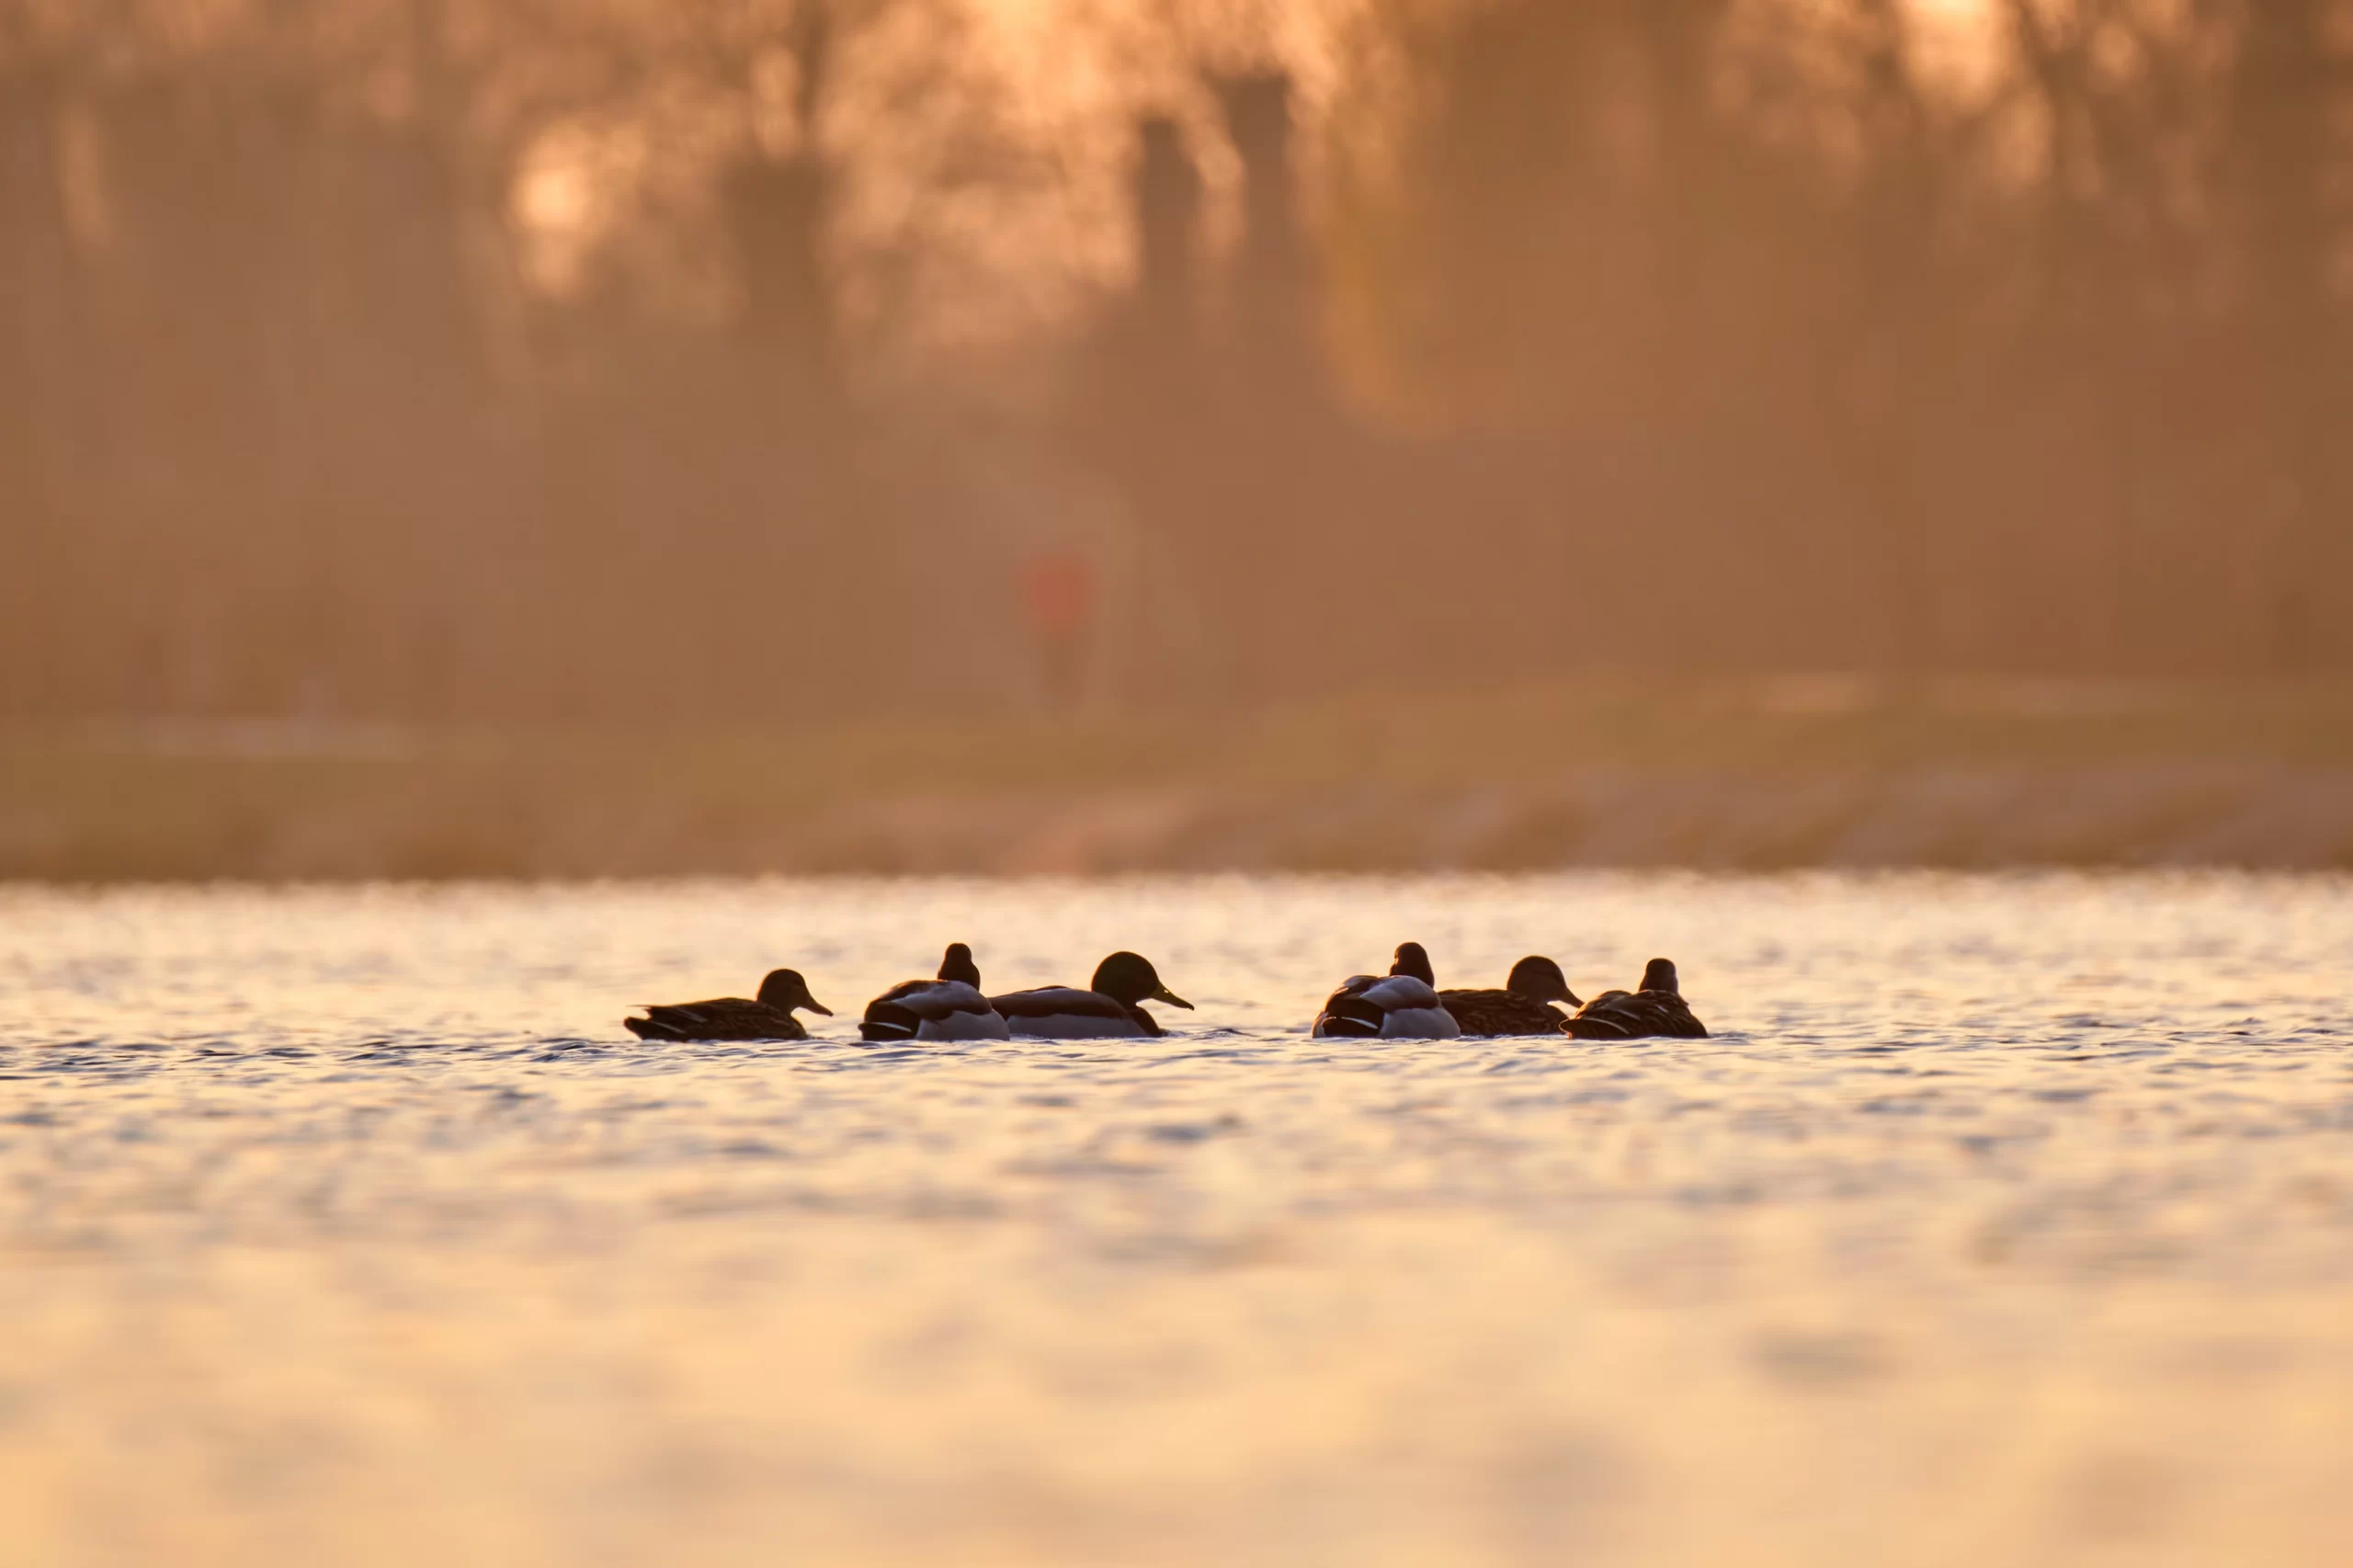 wild-ducks-swimming-on-lake-water-at-bright-sunset-2022-03-30-00-04-11-utc